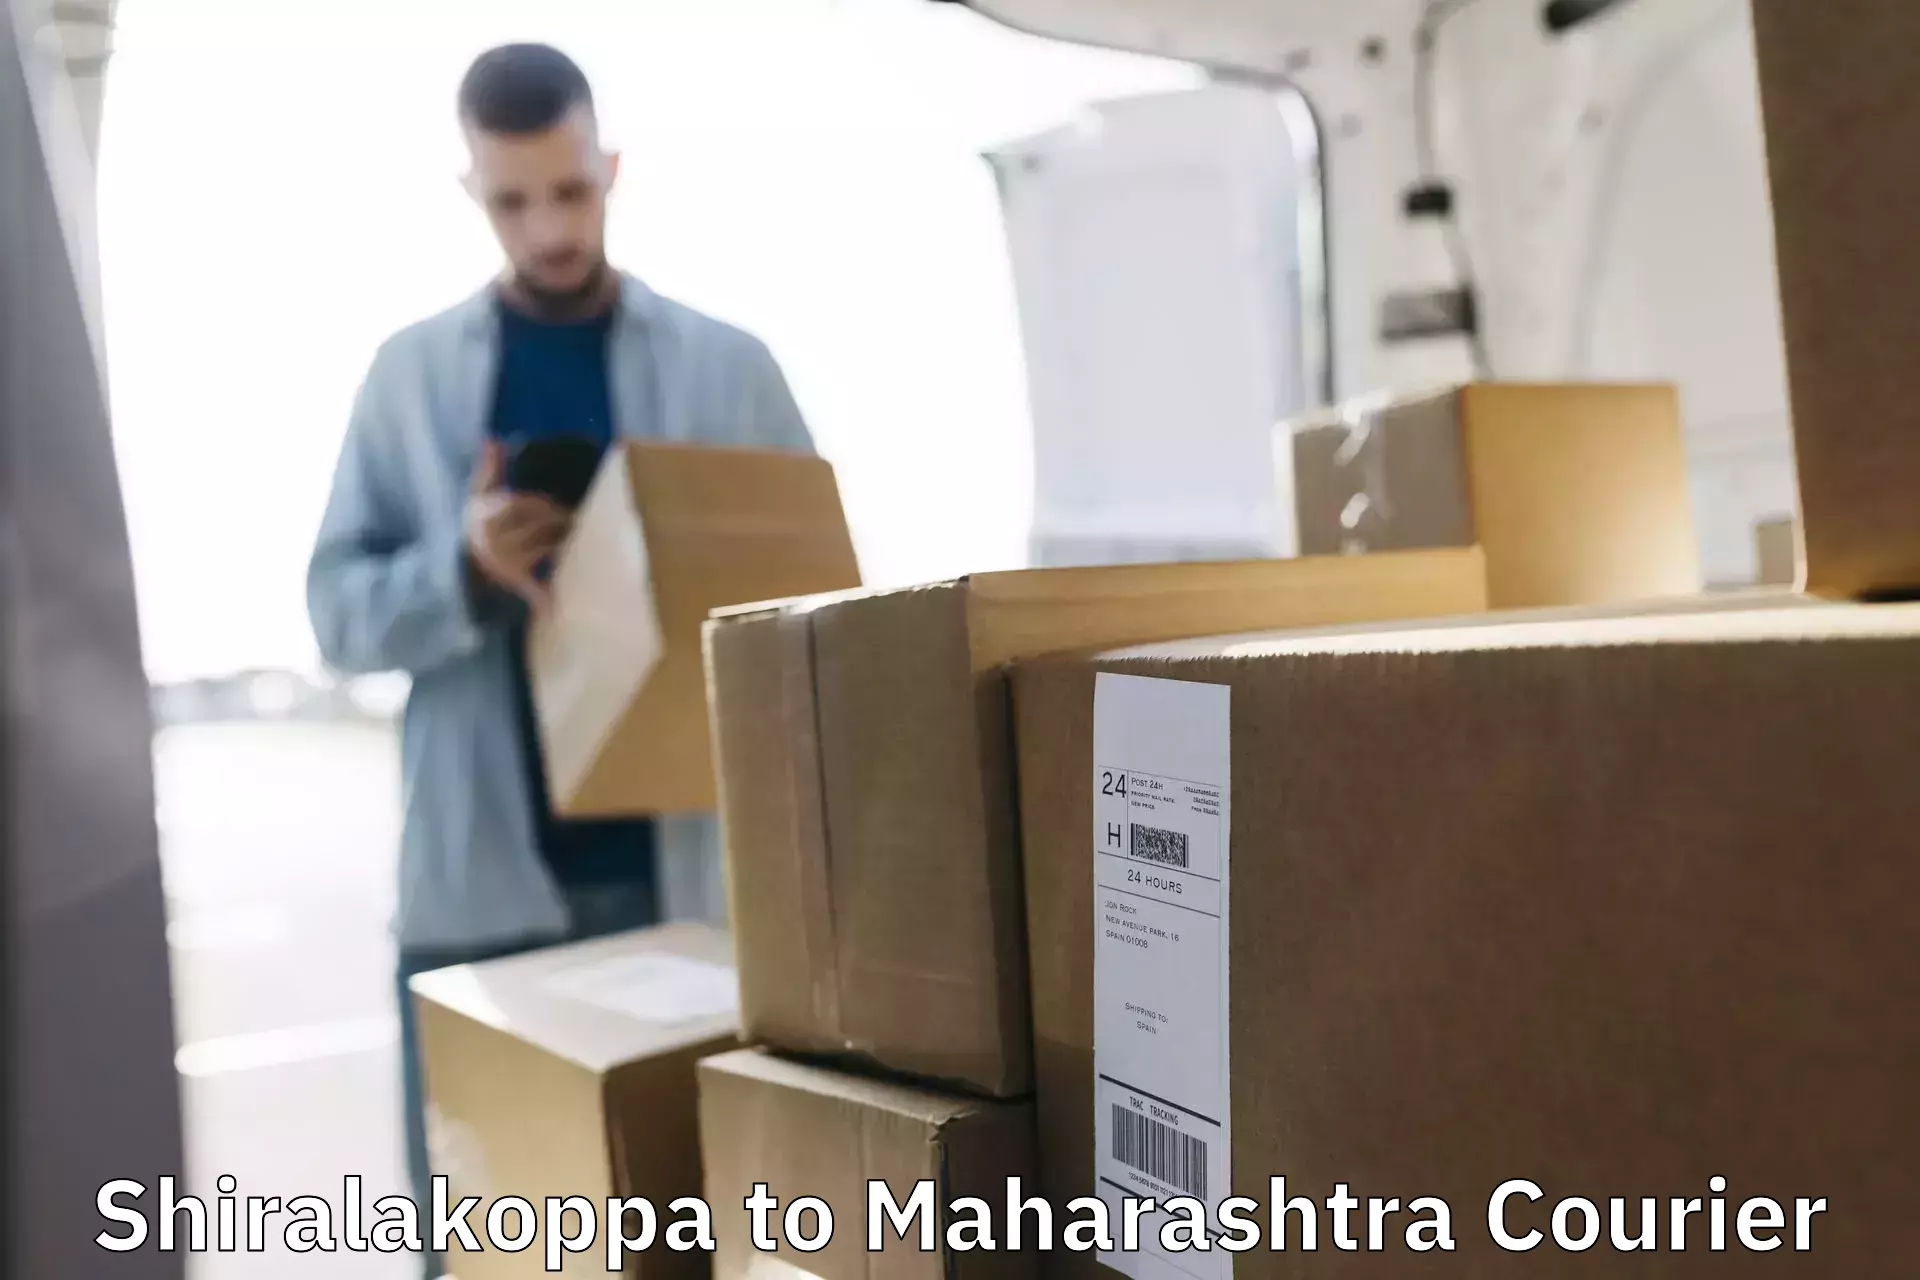 Courier service partnerships Shiralakoppa to Kurkumbh